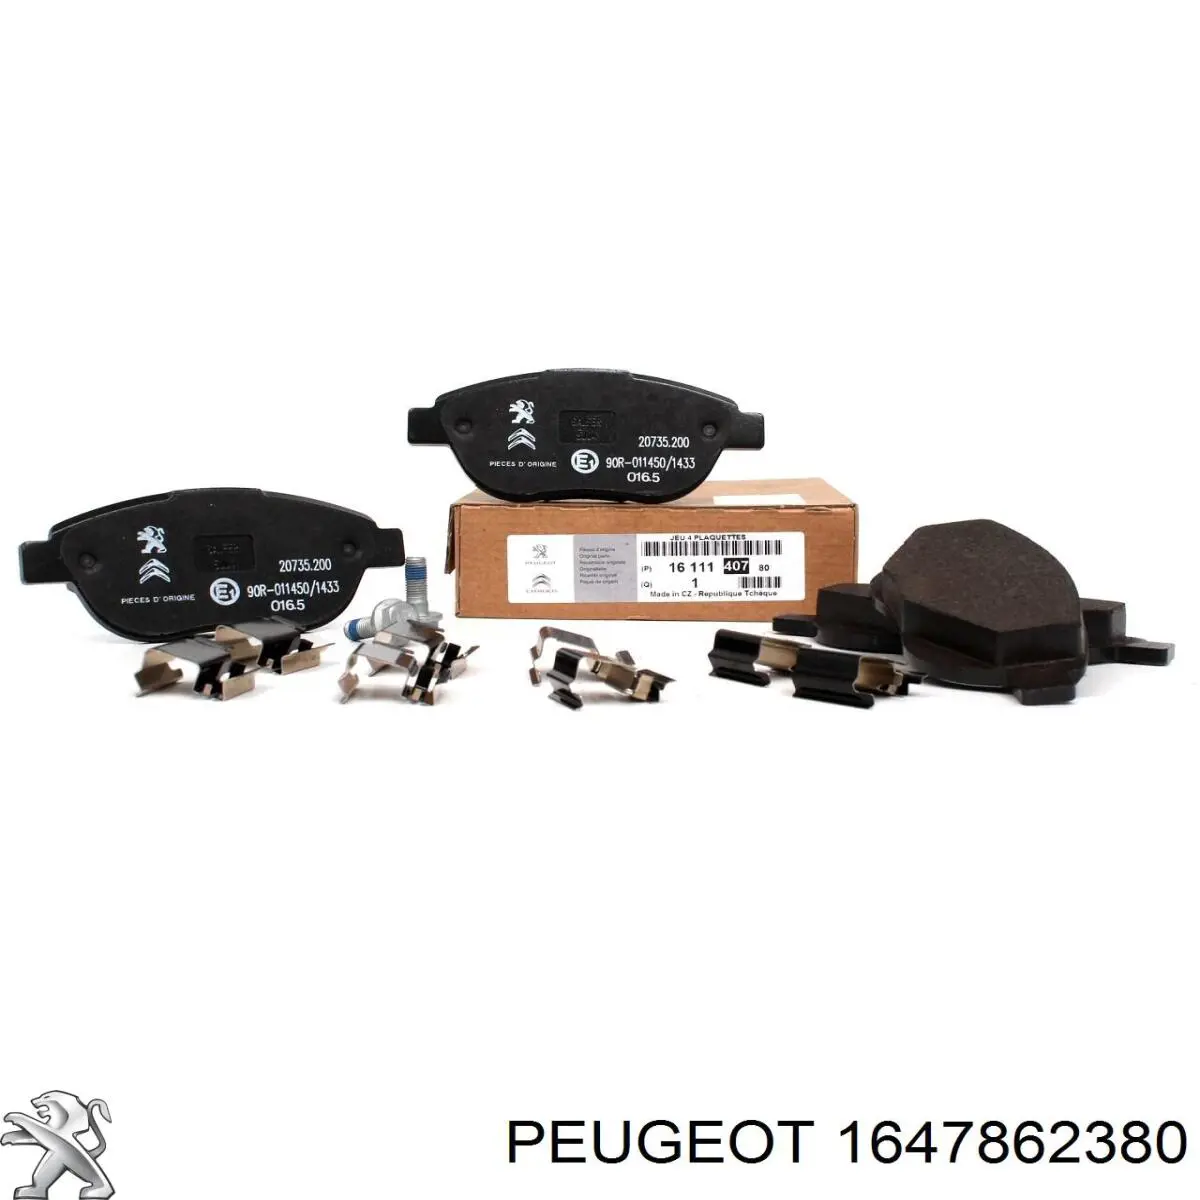 1647862380 Peugeot/Citroen колодки тормозные передние дисковые